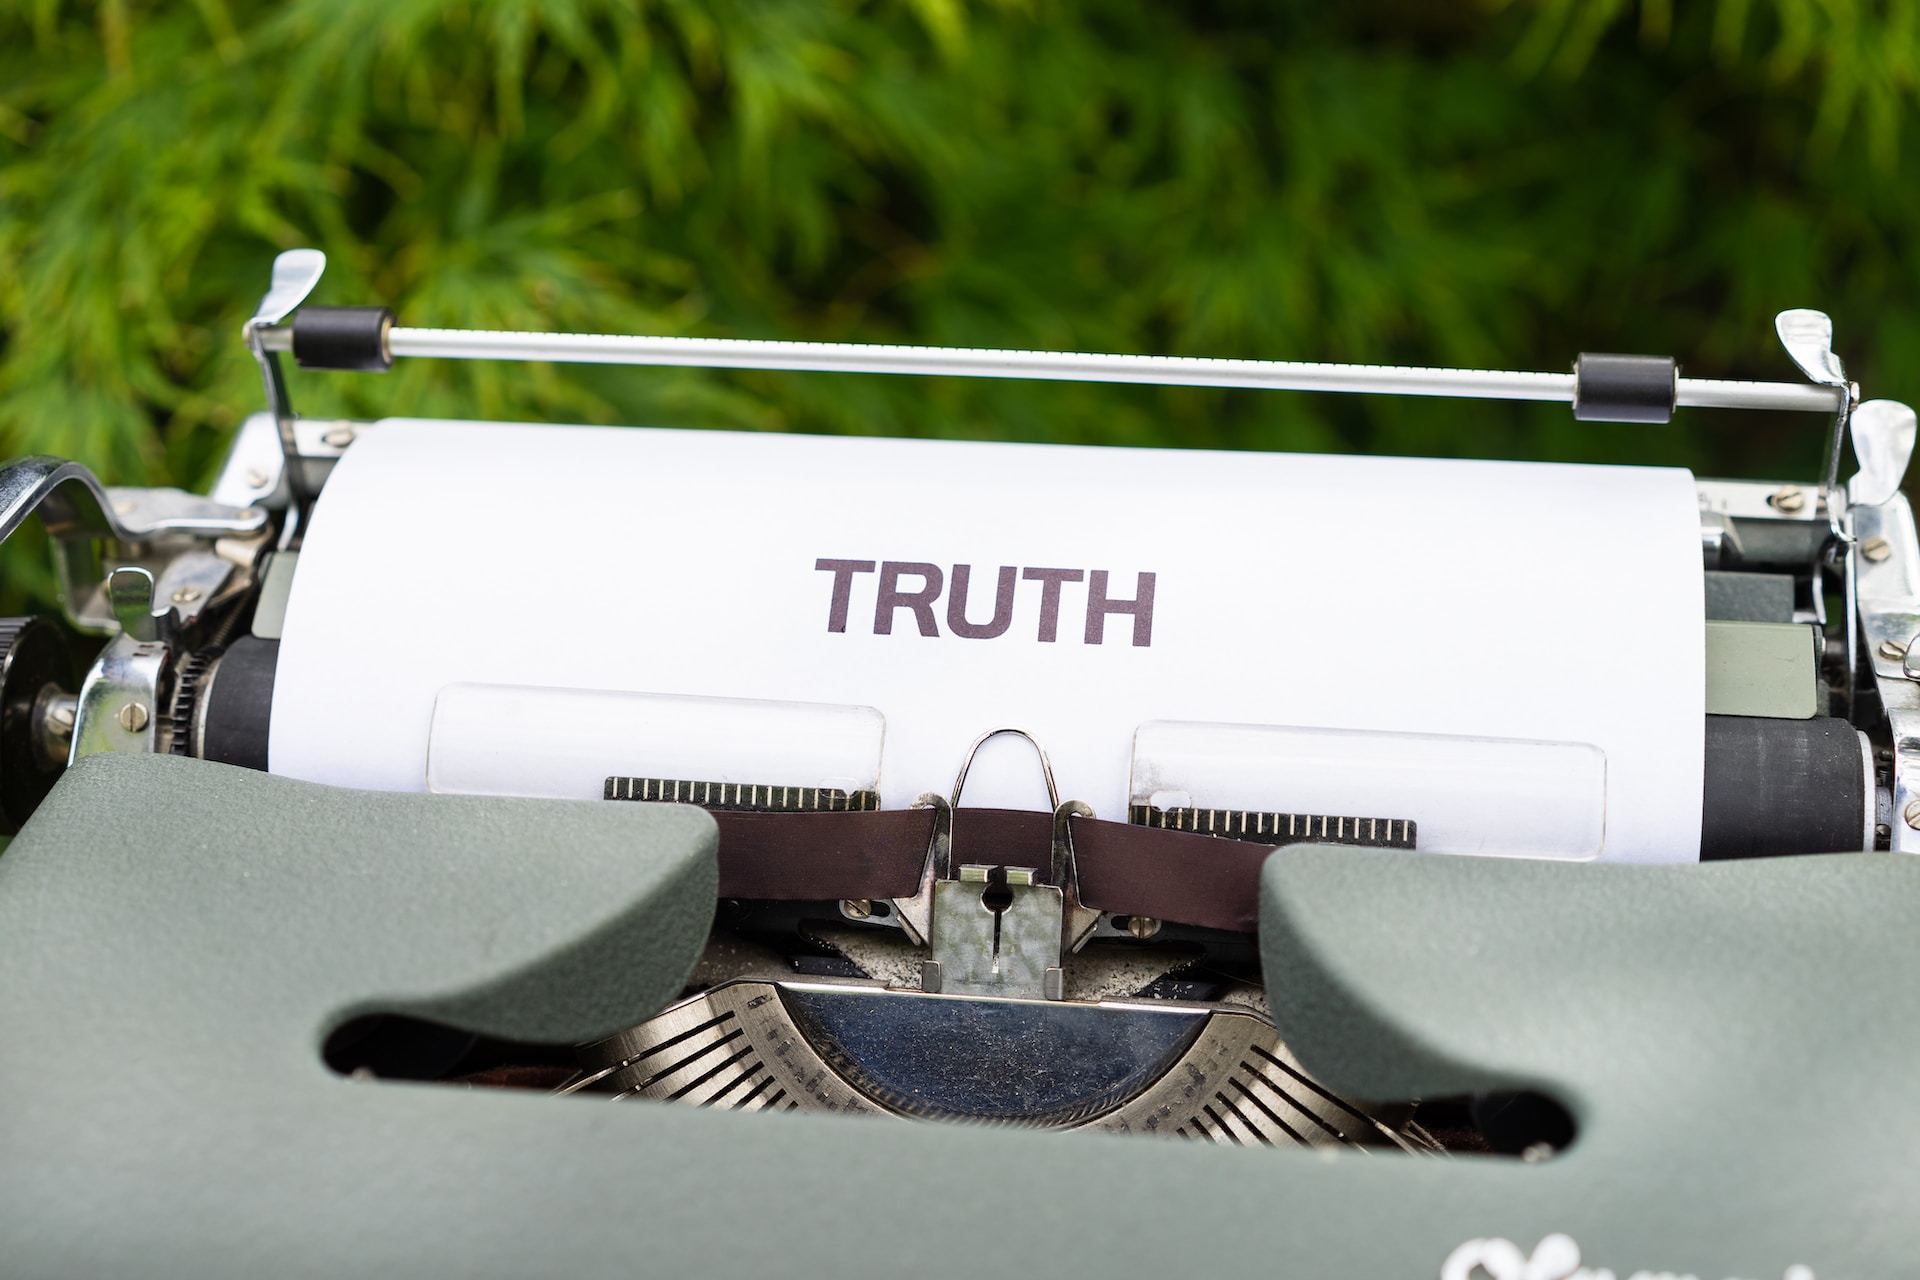 Илон Маск хочет создать TruthGPT — чат-бота для поиска истины